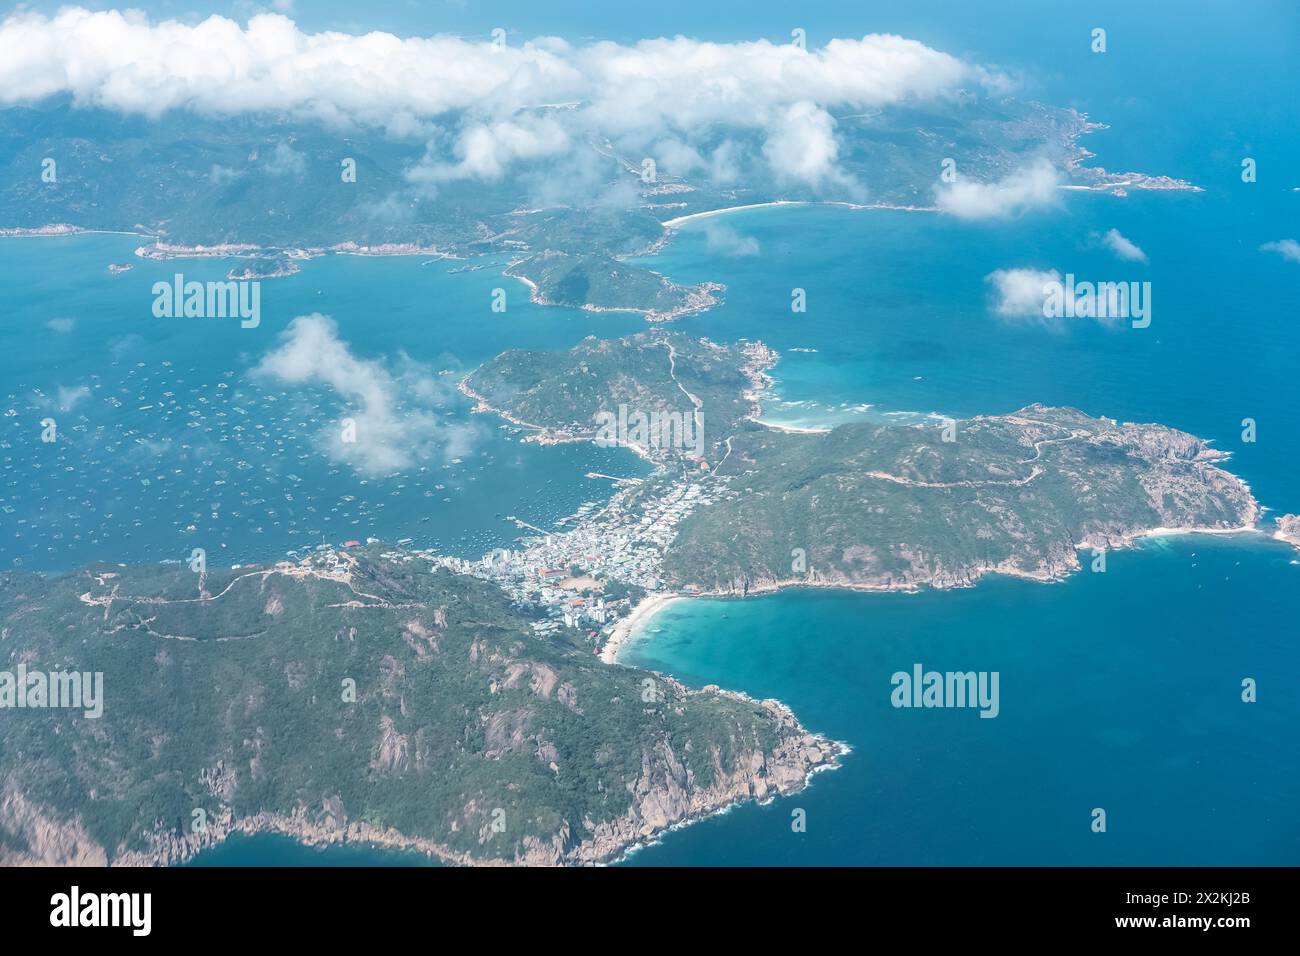 Binh Ba Island Vietnam Area View. Cam Ranh Bay, Provinz Khanh Hoa, Binh Ba Island bietet unberührte Strände mit blauem Wasser und weißen Sanddünen. Schön Stockfoto